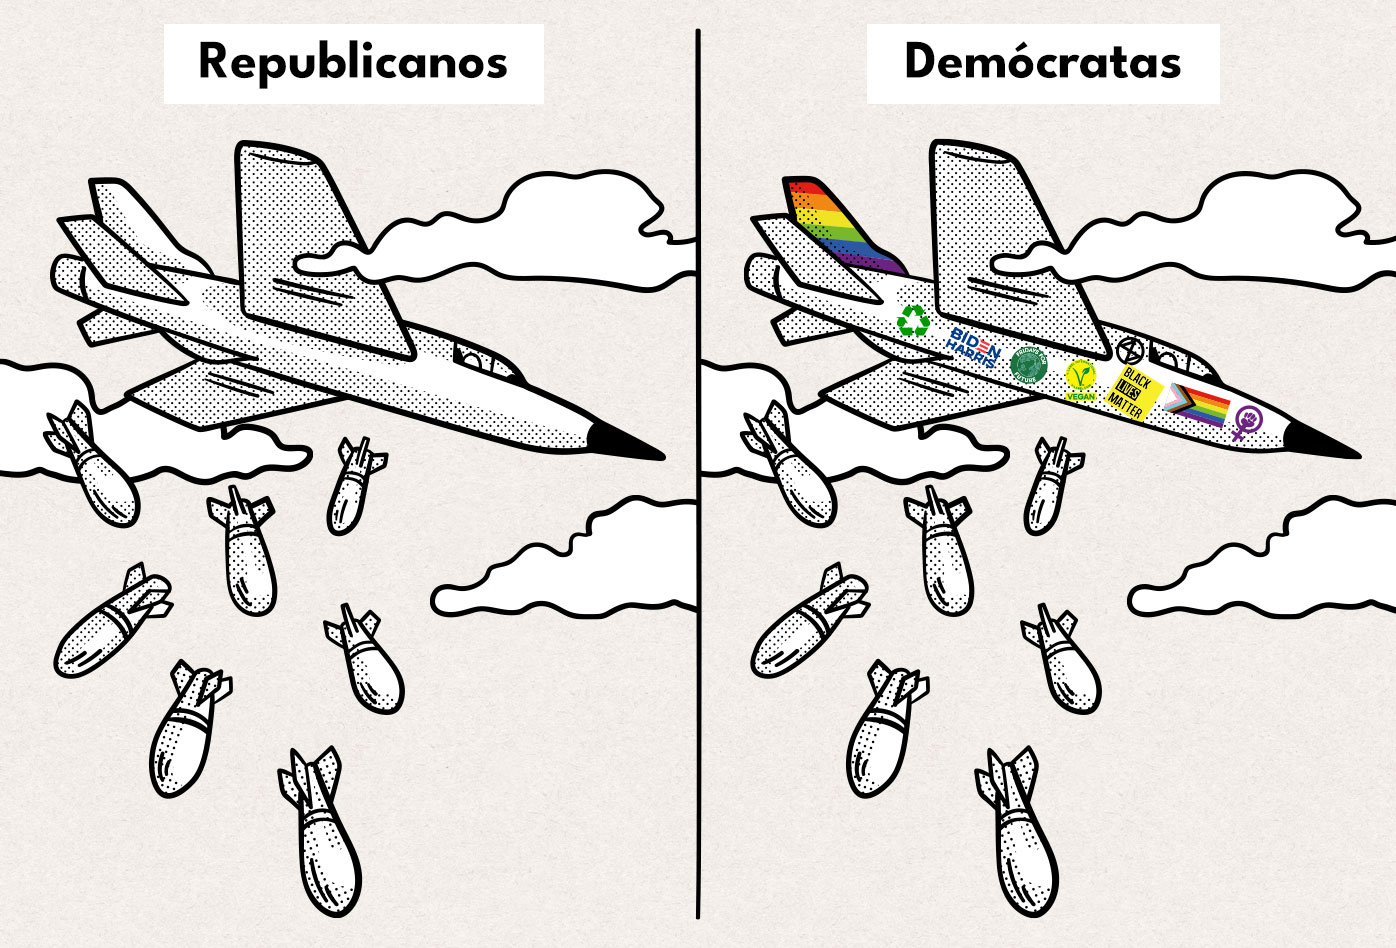 Dibujo inspirado en el meme en el que se muestra un avión bombardero republicano, y un avión bombardero demócarata, adornado con la bandera lgbtq+ y otras causas liberales